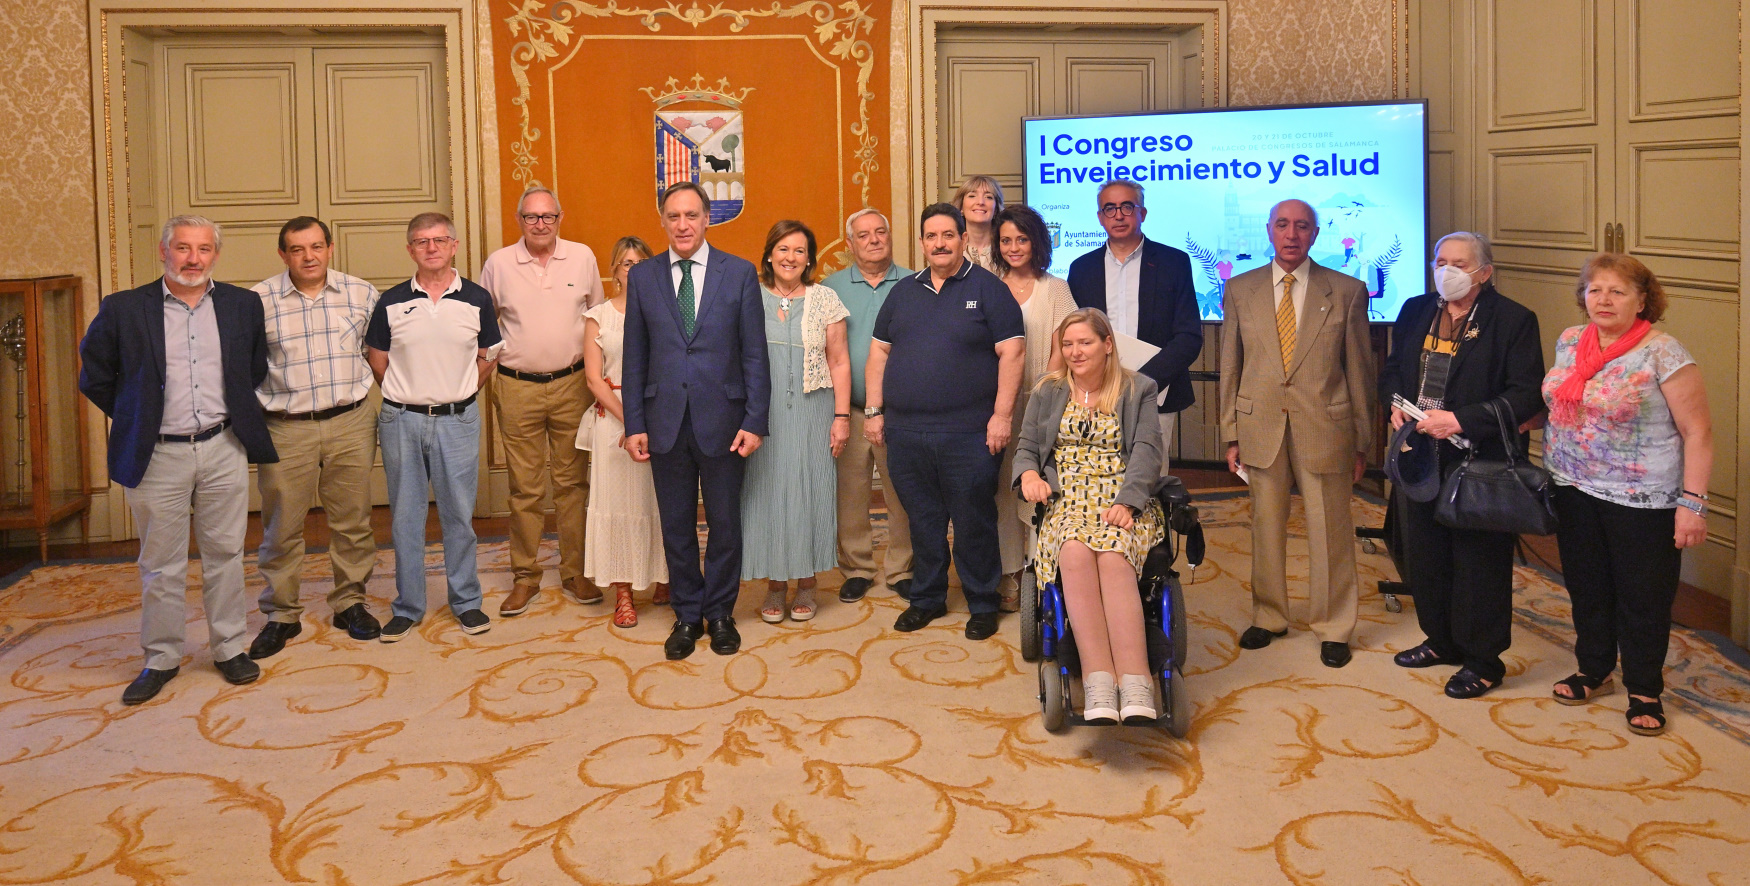 A Câmara Municipal organiza em outubro I Congresso sobre Envelhecimento e Saúde da Cidade de Salamanca ✔️